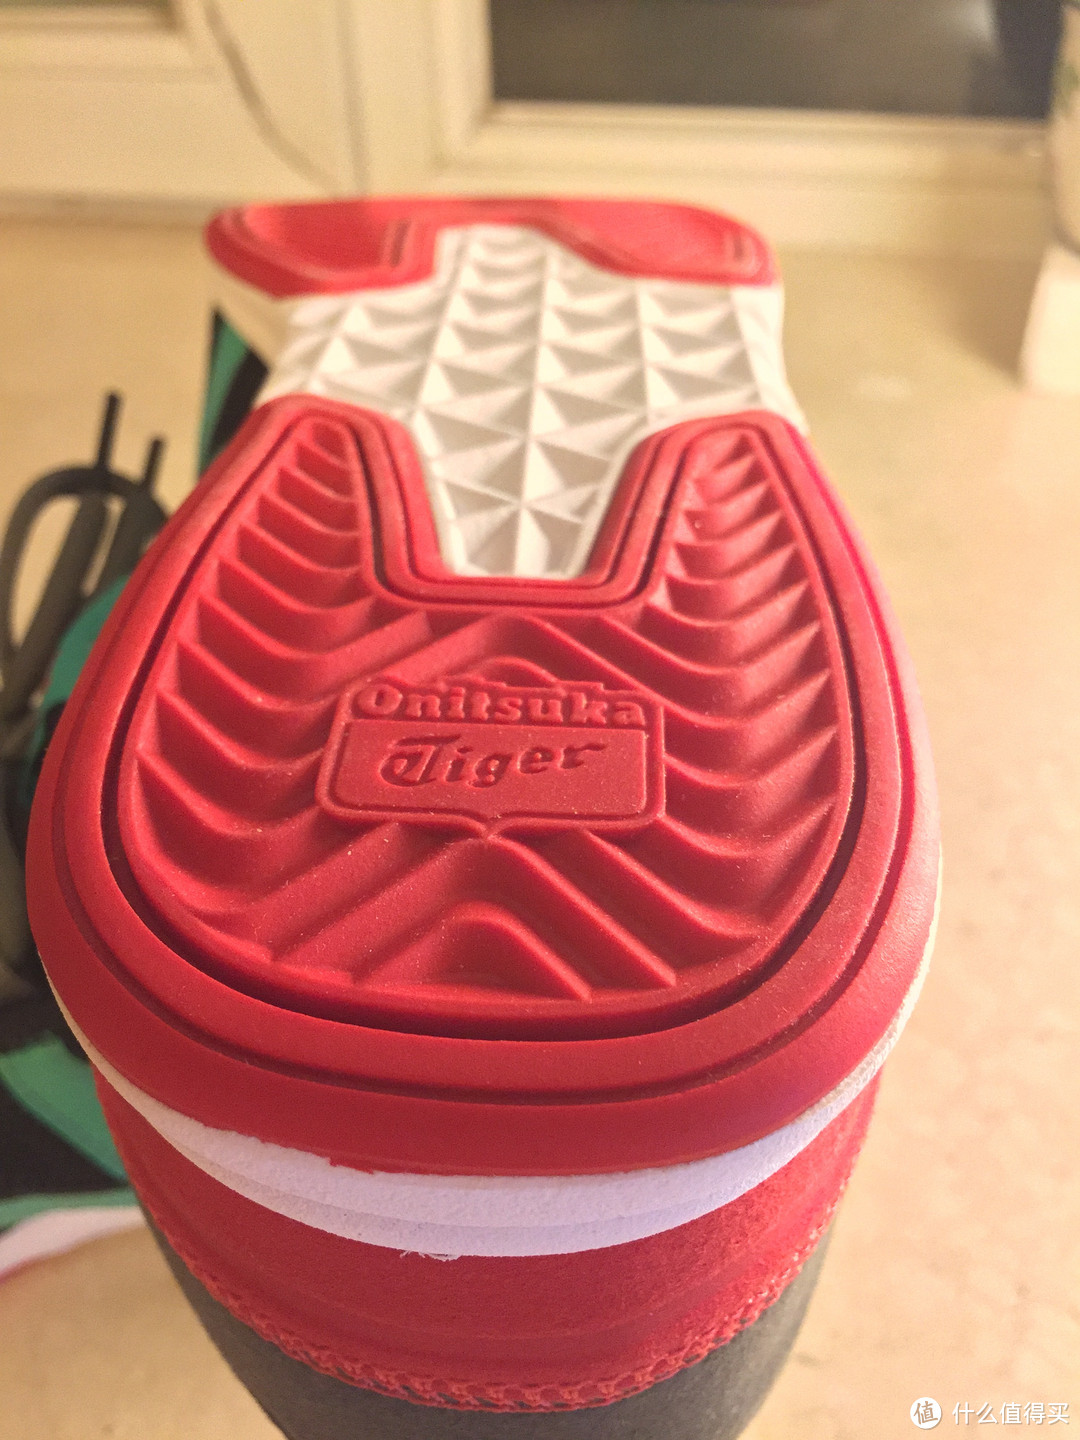 鞋底没什么科技含量，只有一个solyte，红色部分应该是橡胶材质